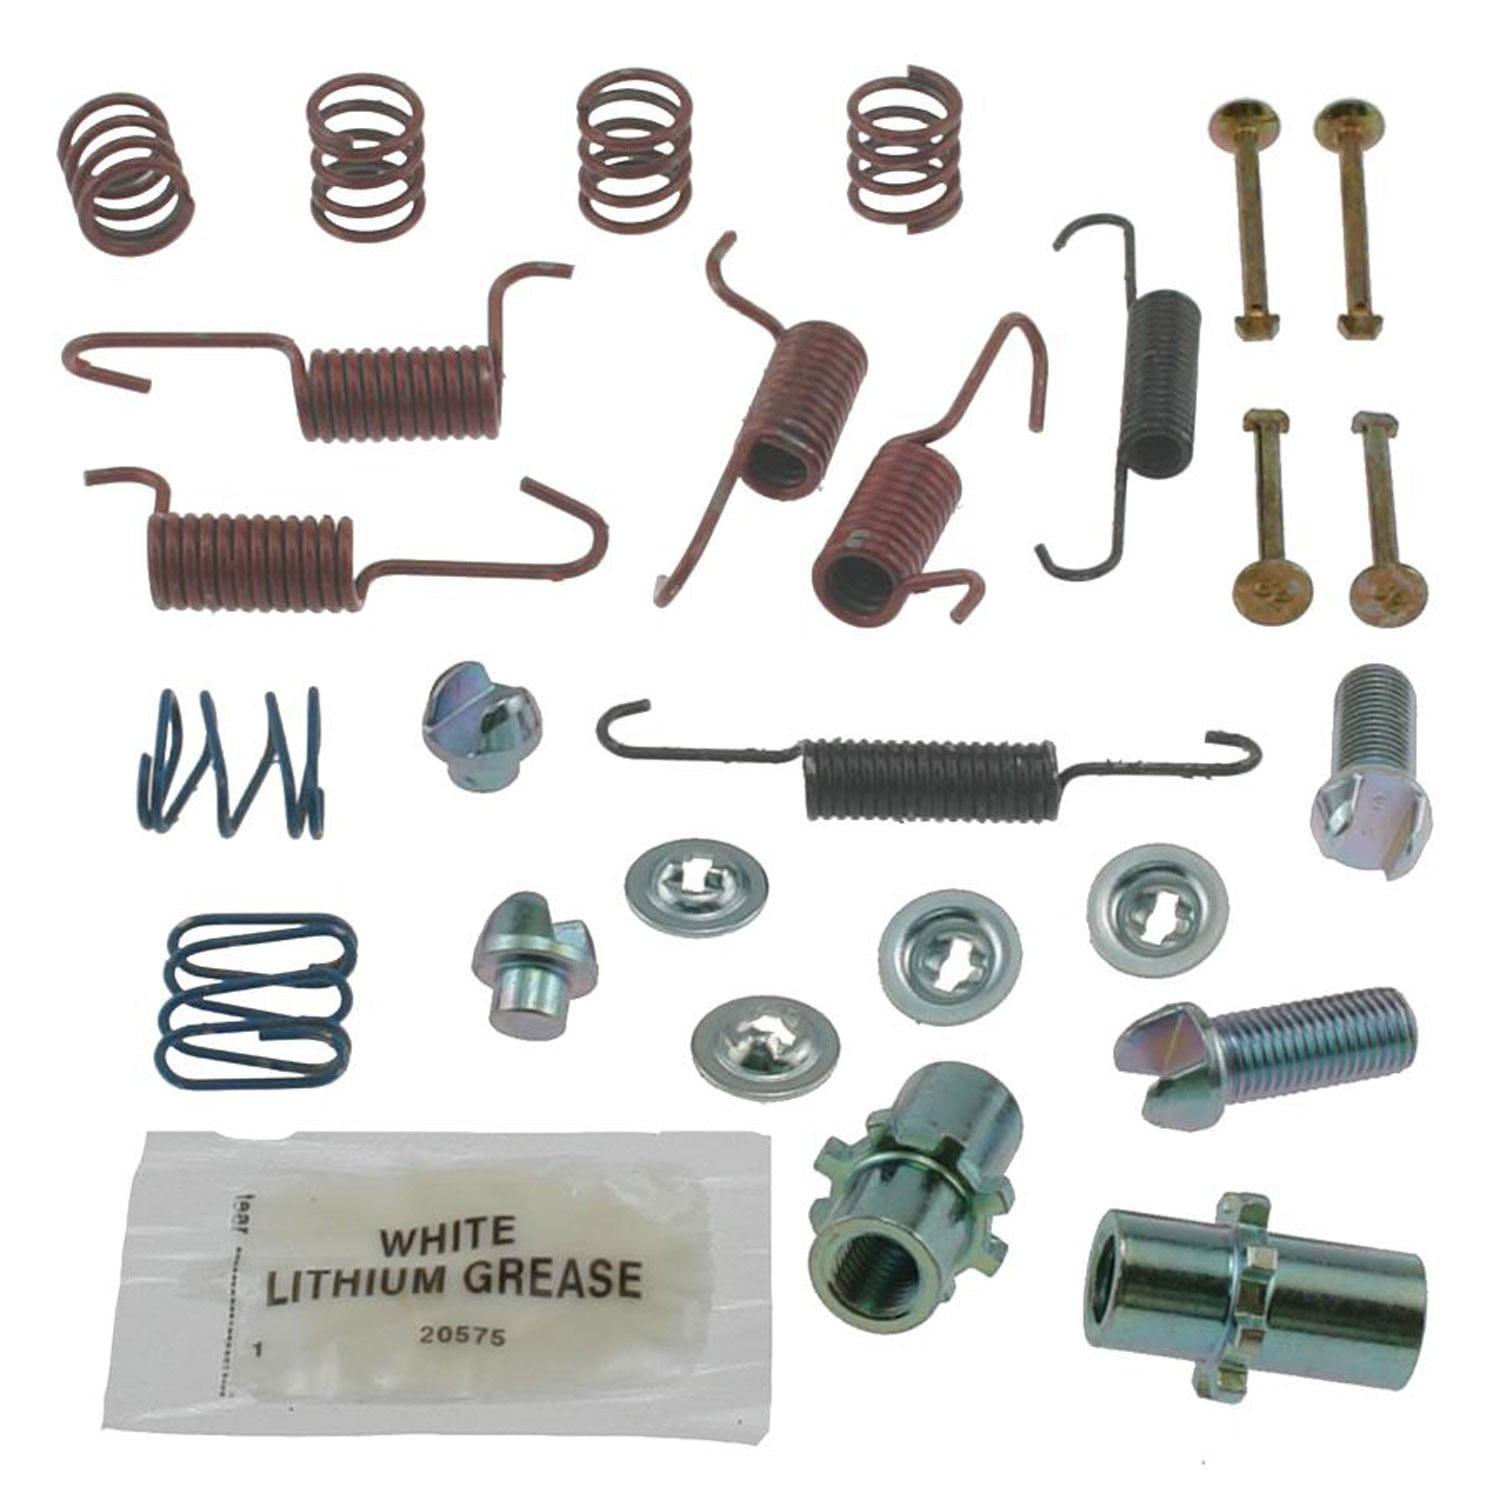 Carlson Quality Brake Parts 17426 Drum Brake Hardware Kit